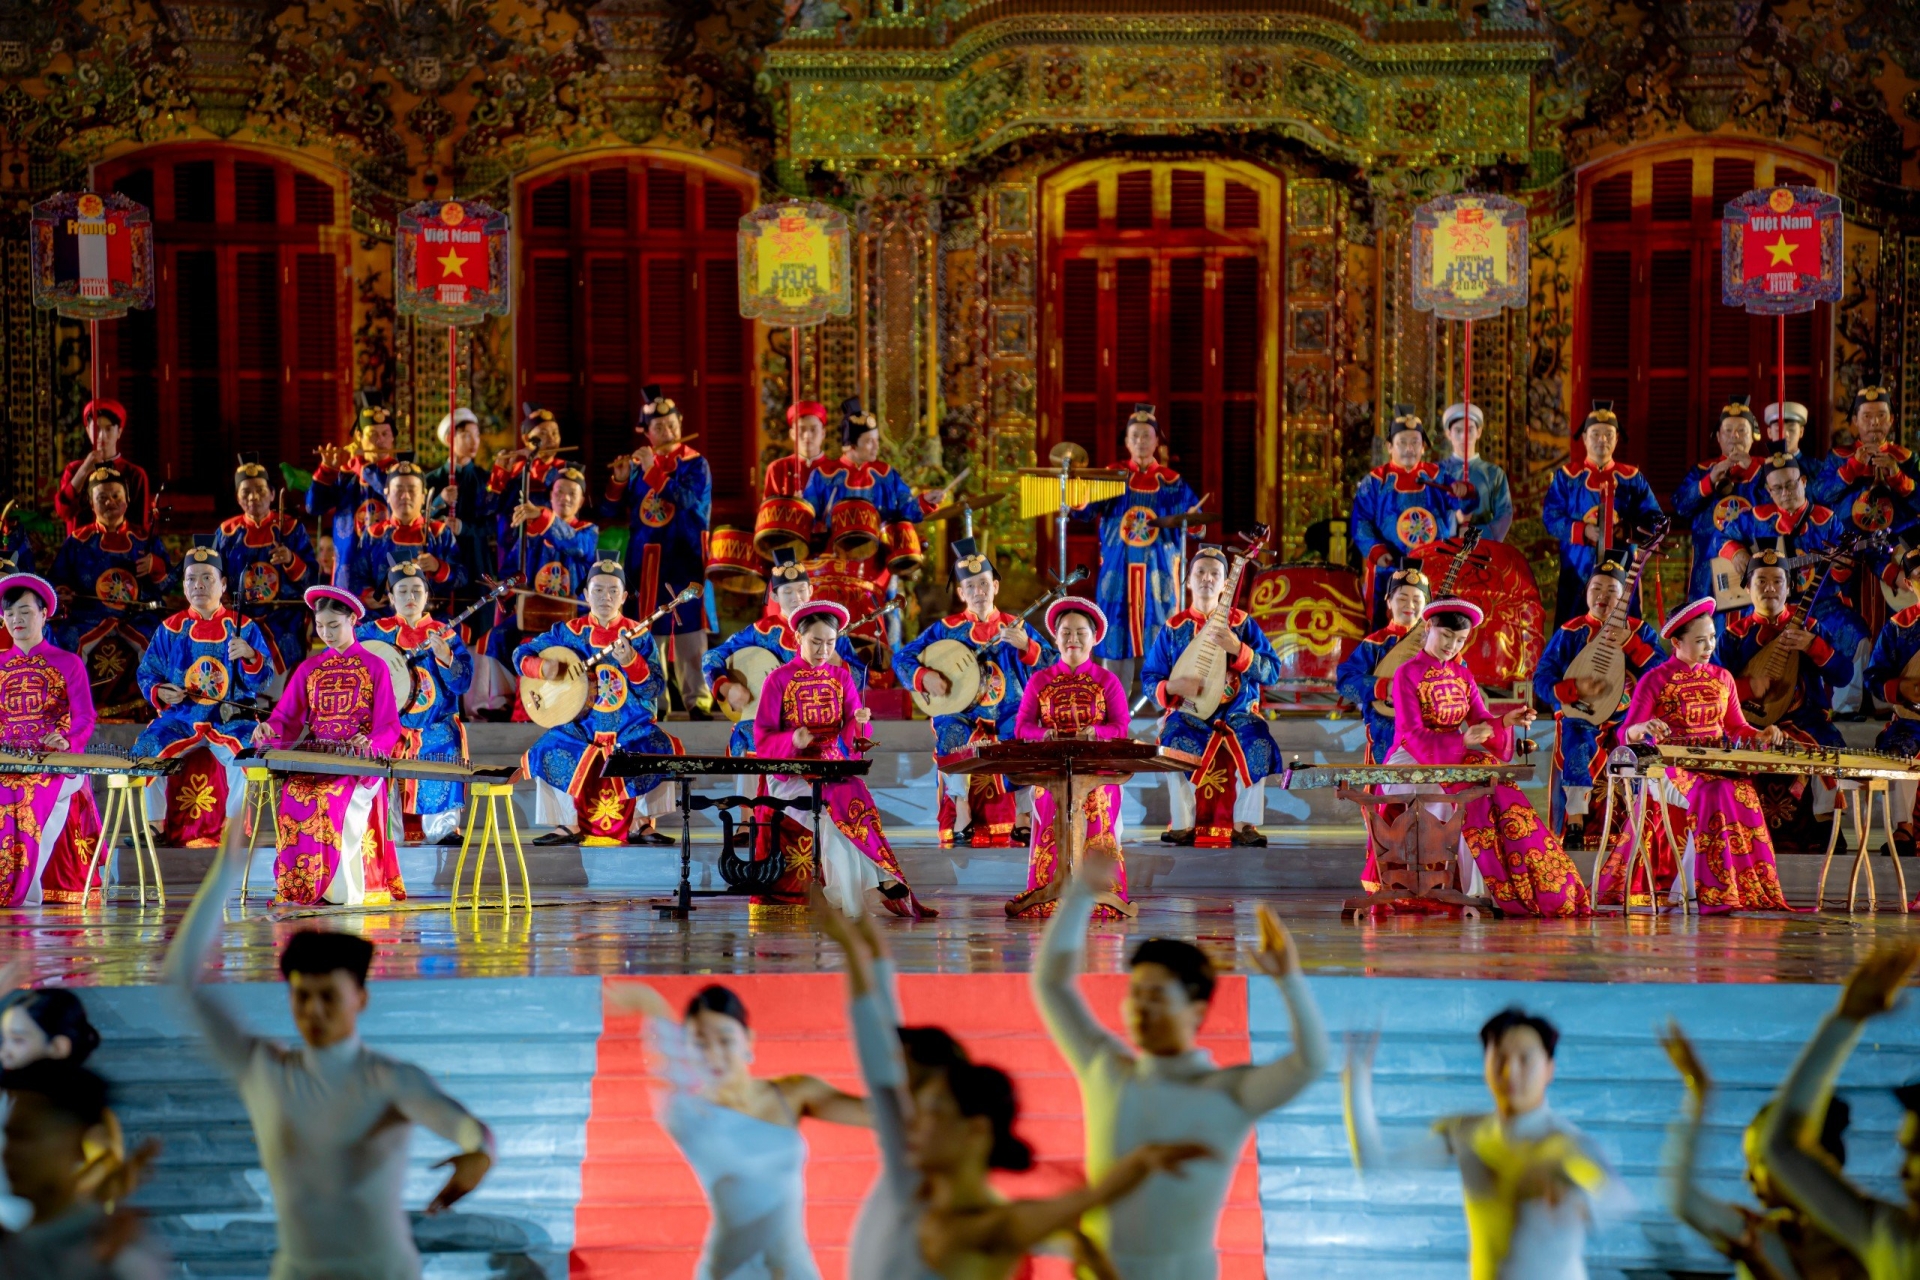 Sau 24 năm với 11 kỳ tổ chức, Festival Huế đã trở thành điểm hẹn văn hóa của các nghệ sĩ trong nước và quốc tế, là một trong những sự kiện văn hóa, du lịch, nghệ thuật nổi bật của Việt Nam trong suốt nhiều năm qua.